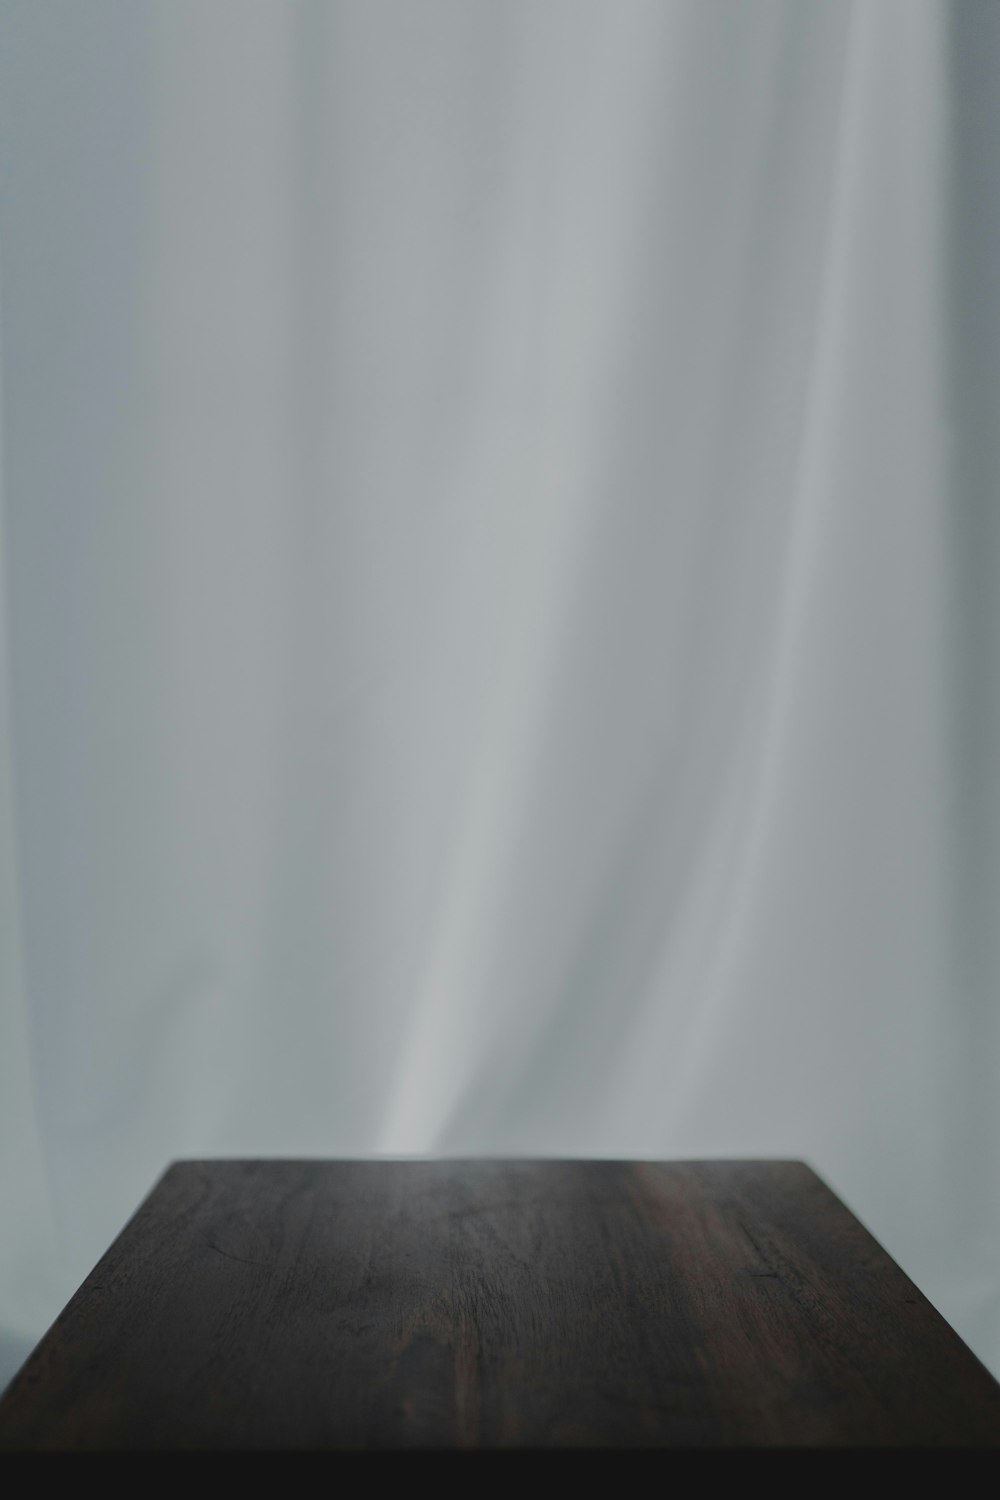 têxtil branco perto da mesa de madeira marrom